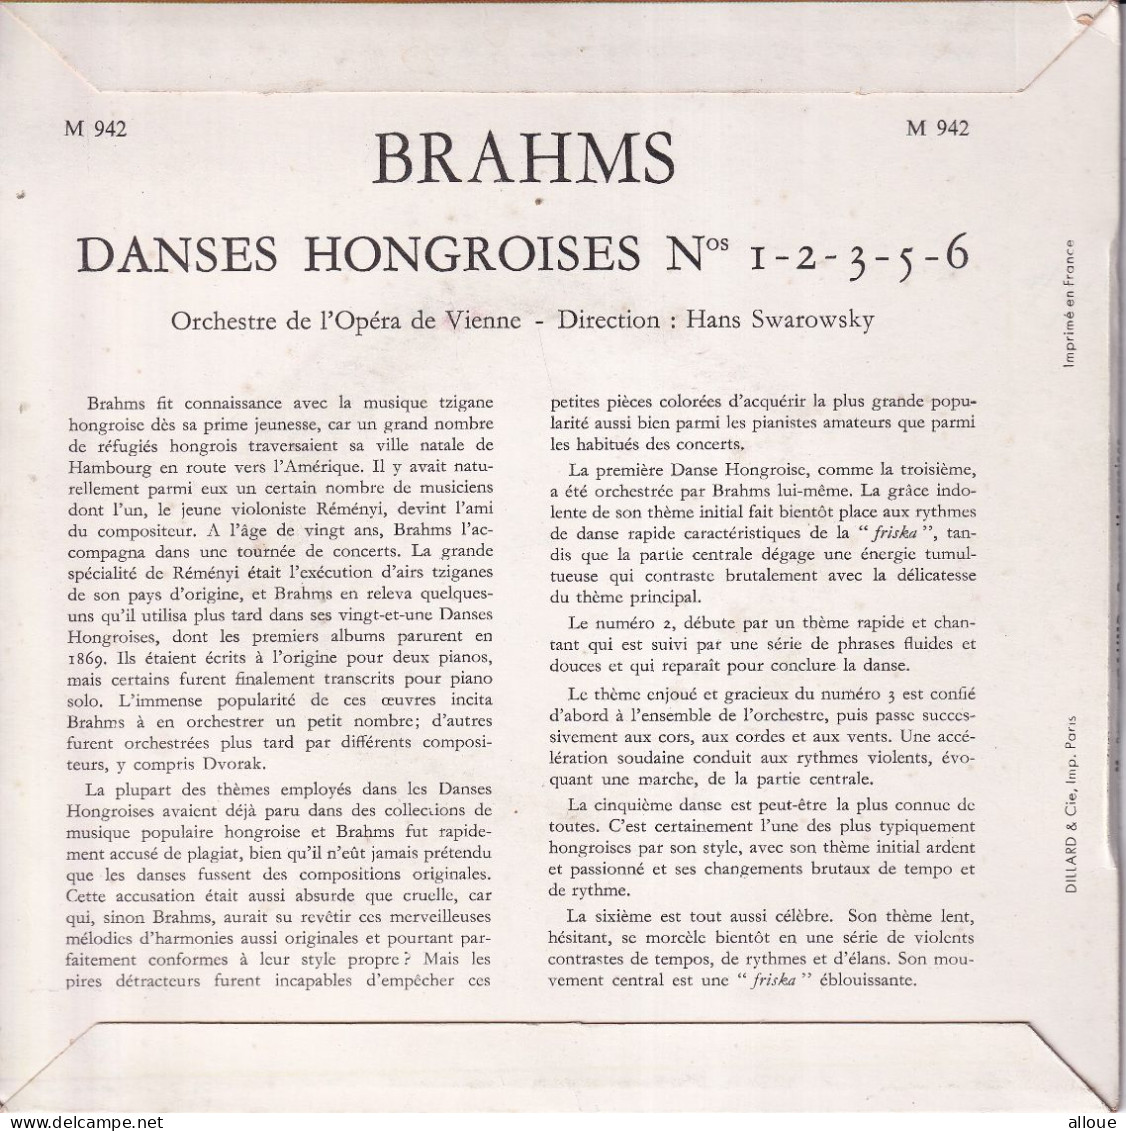 ORCHESTRE DE L'OPERA DE VIENNE - DIRECTION HANS SWAROWSKY - FR EP - BRAHMS - DANCES HONGROISES - Classique